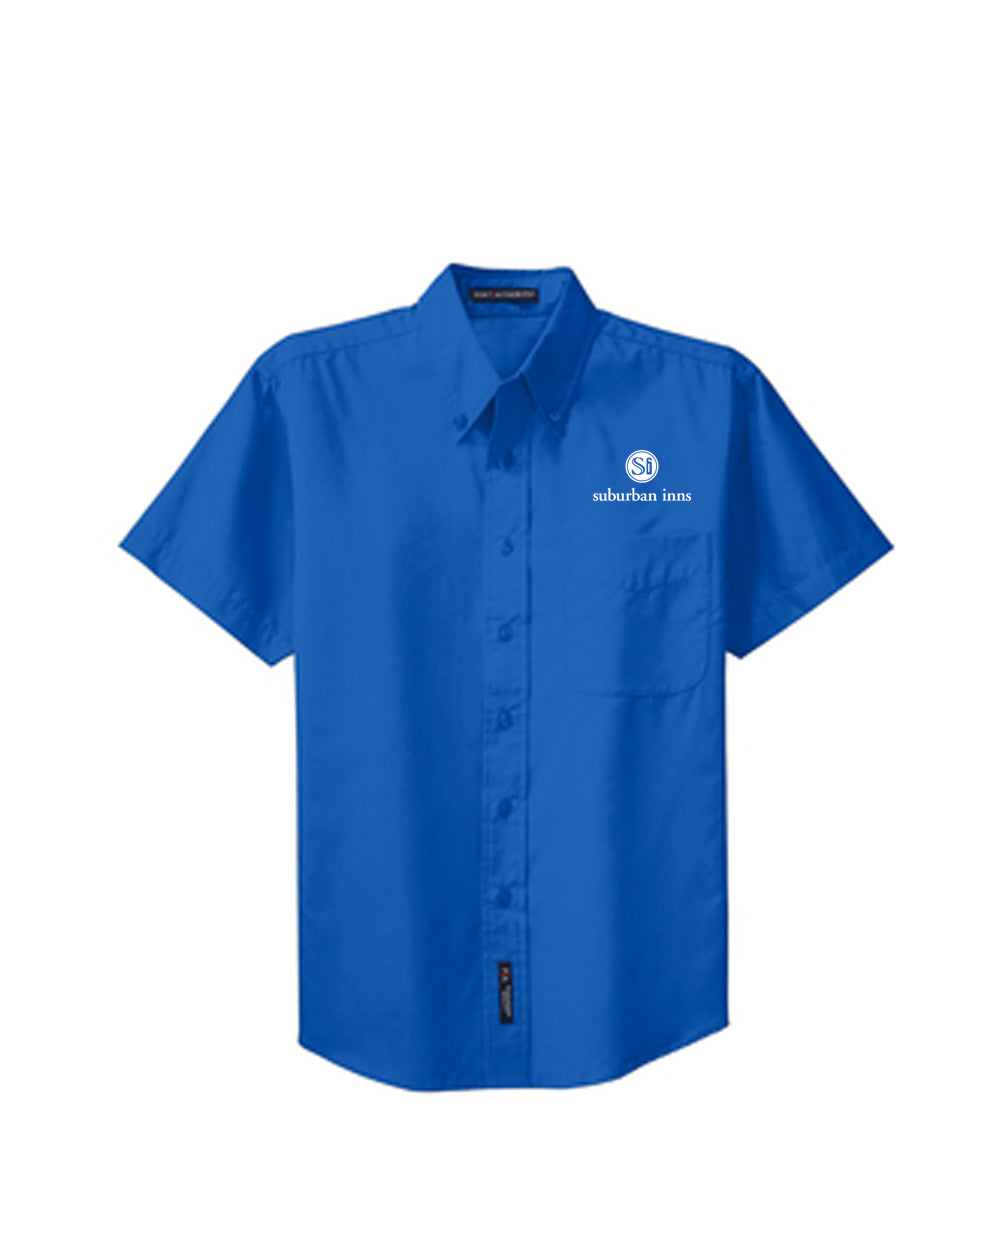 Men's Suburban Inns Port Authority® Short Sleeve Easy Care Shirt